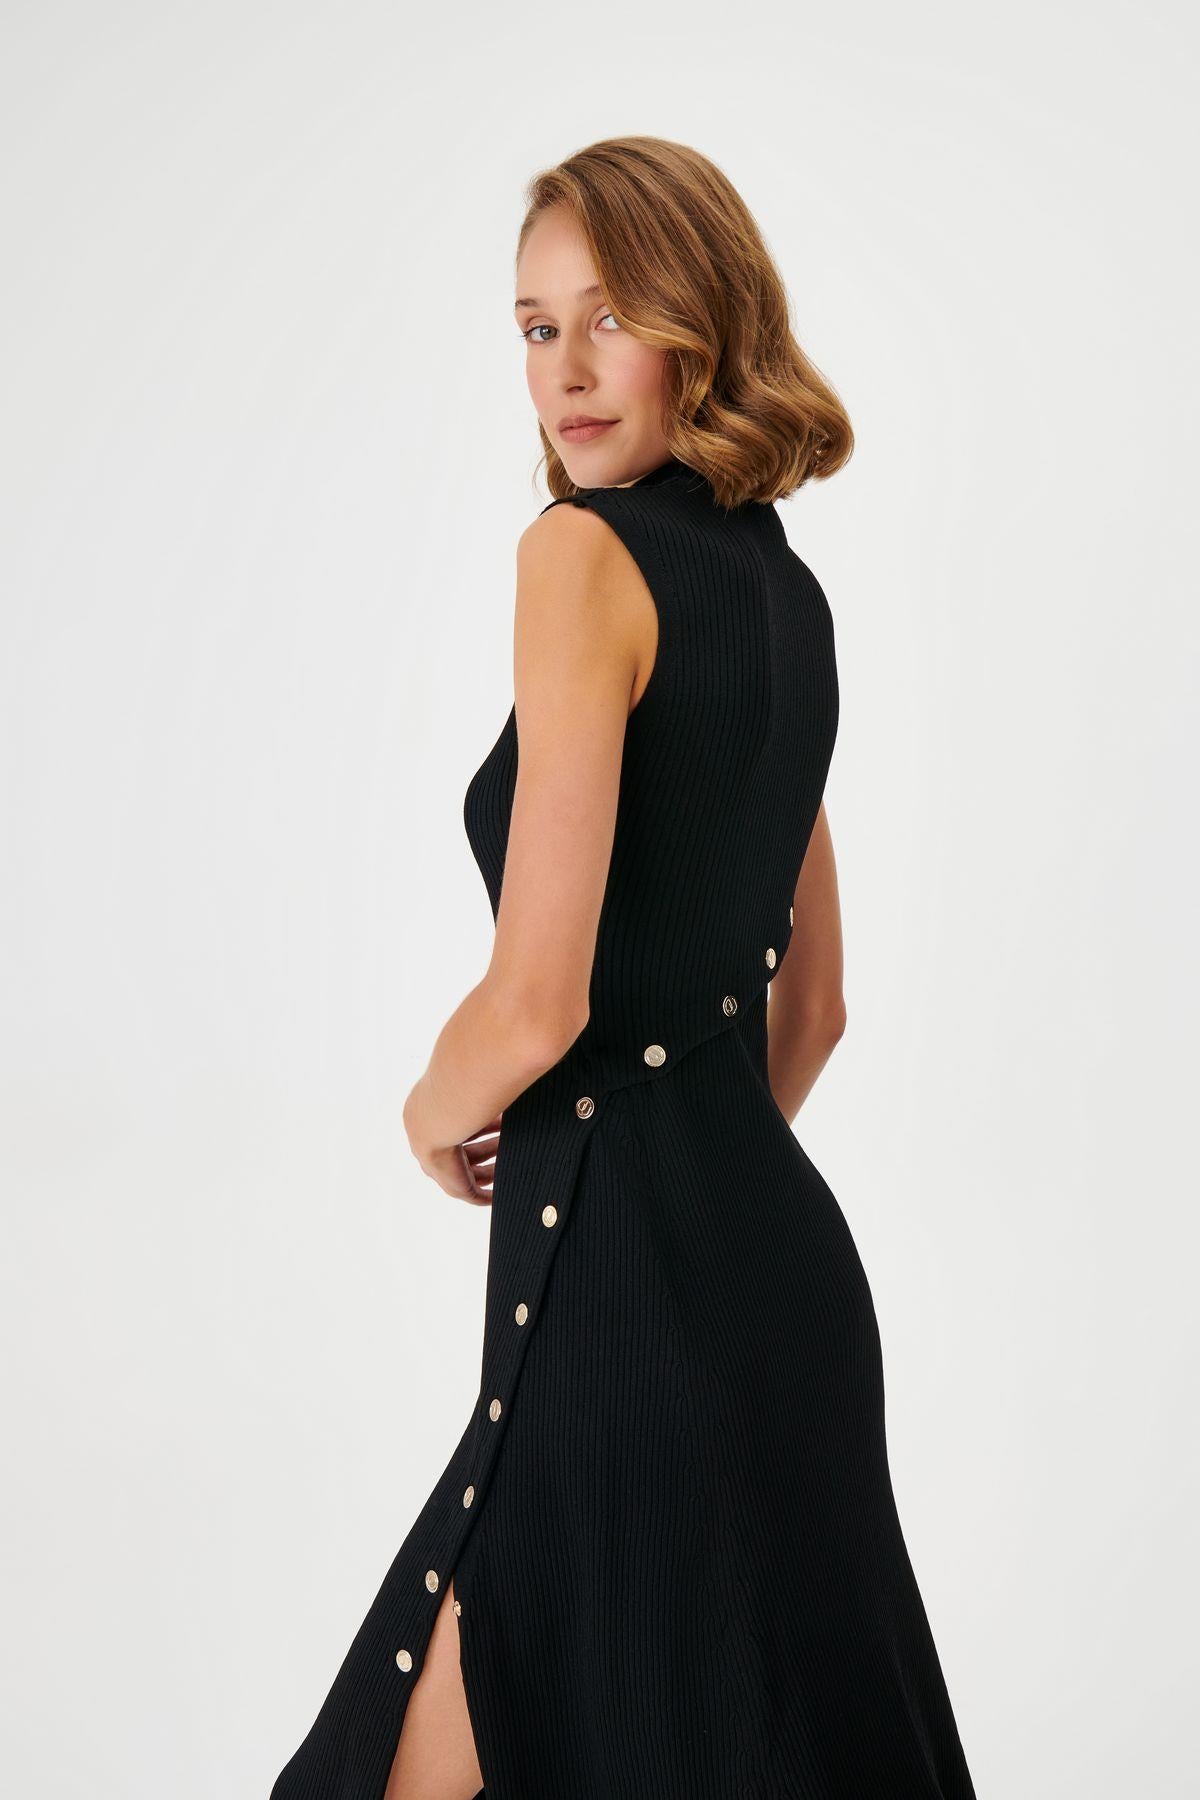 Button Detailed Sleeveless Black Knitwear Dress